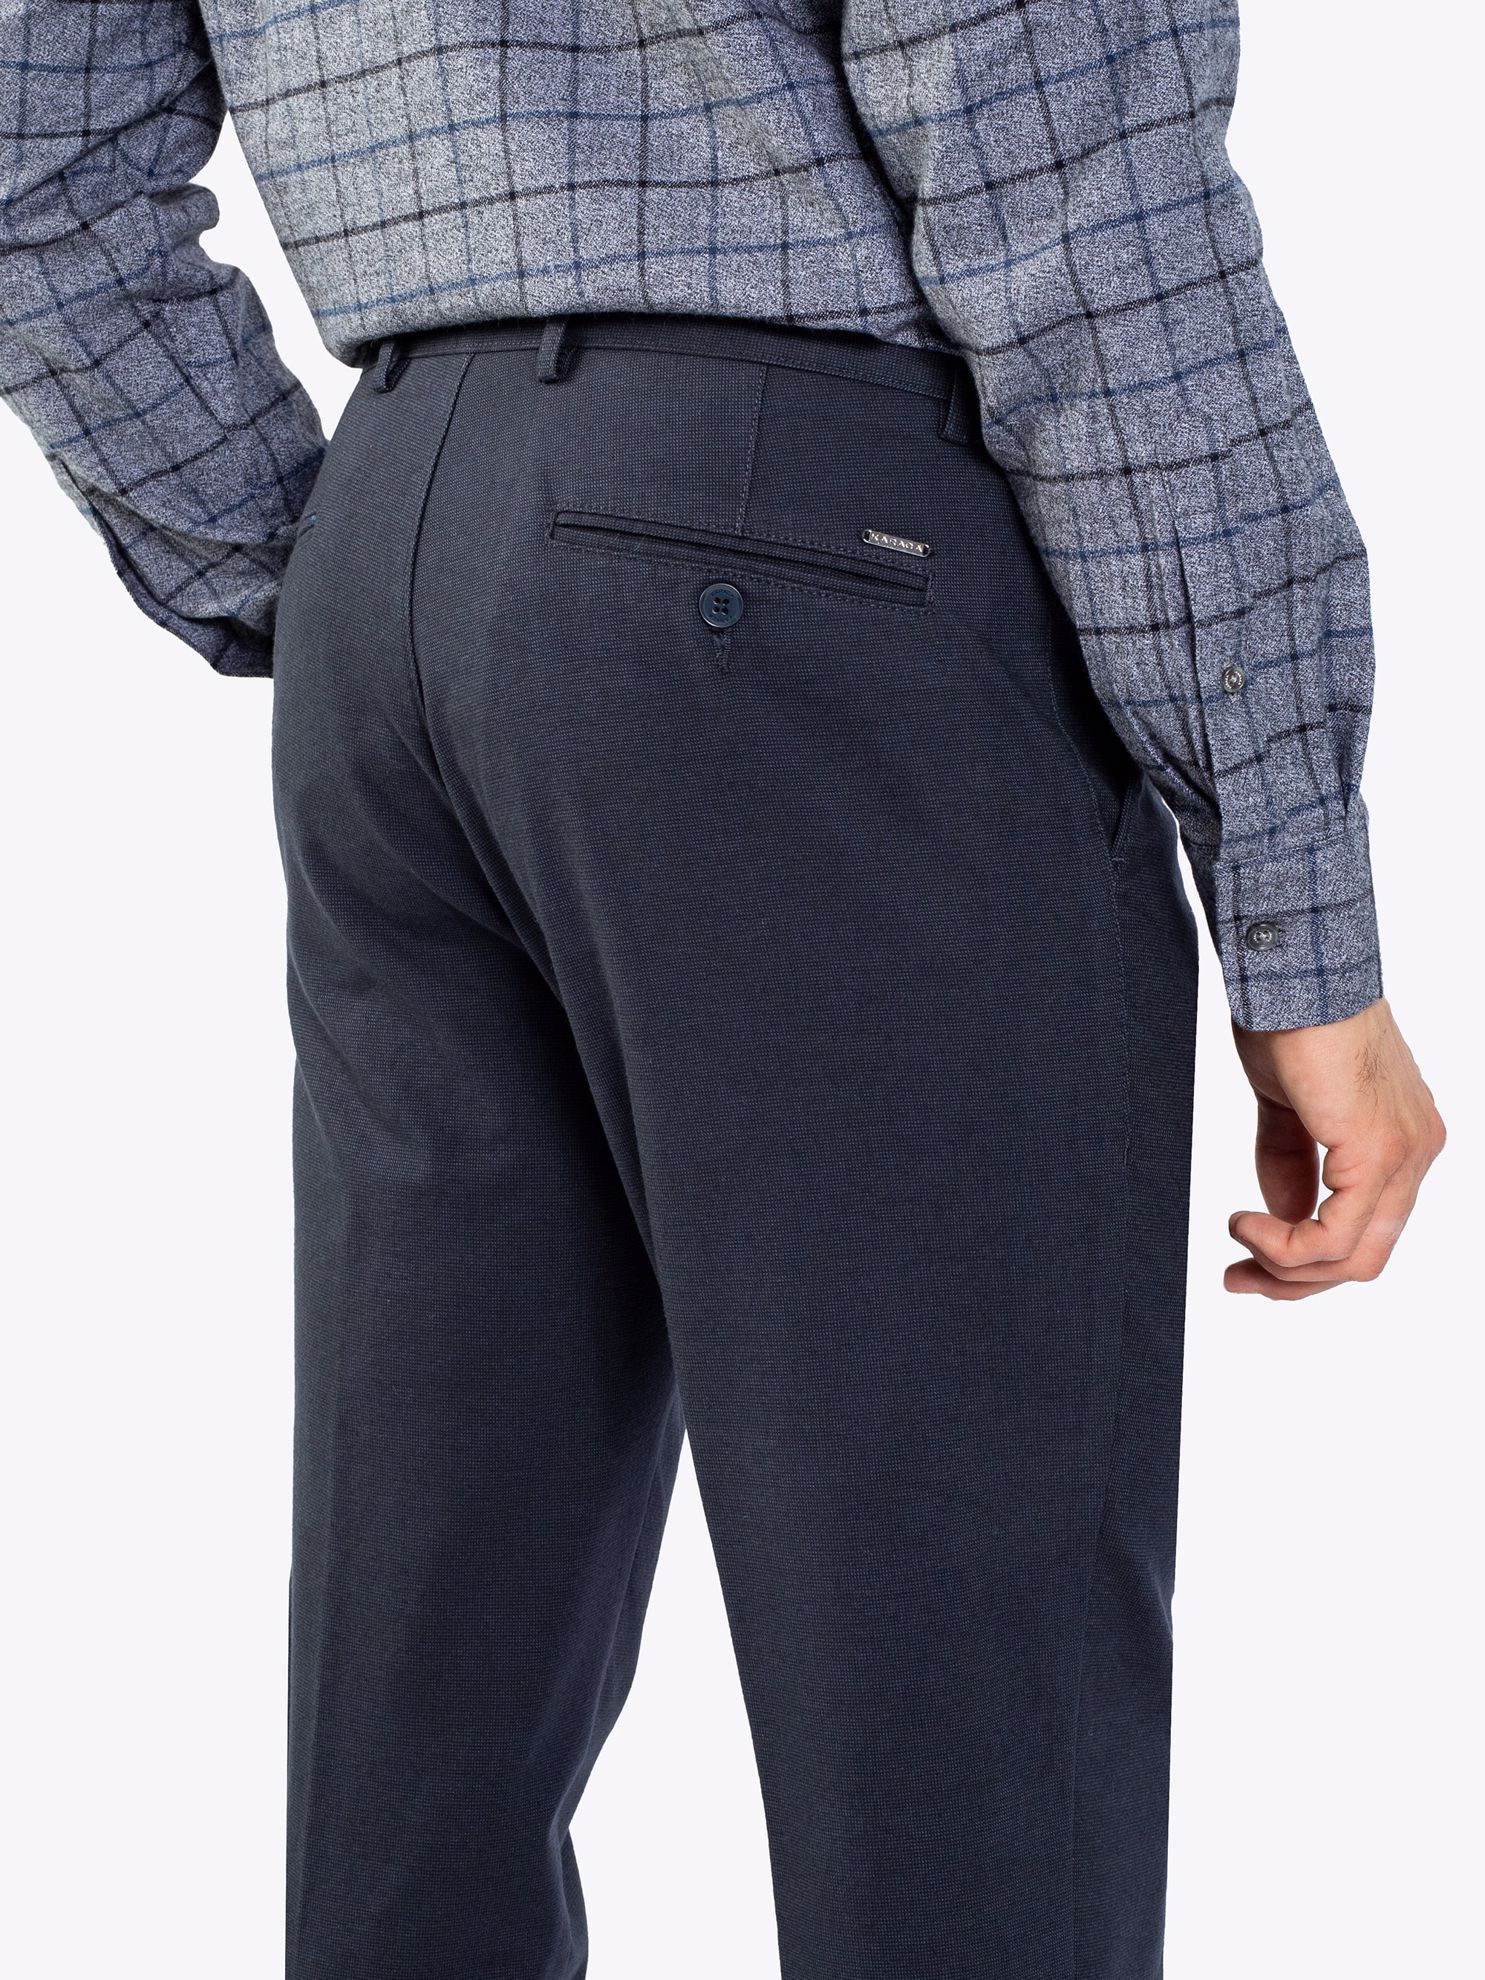 Karaca Erkek 4 Drop Pantolon-Lacivert. ürün görseli